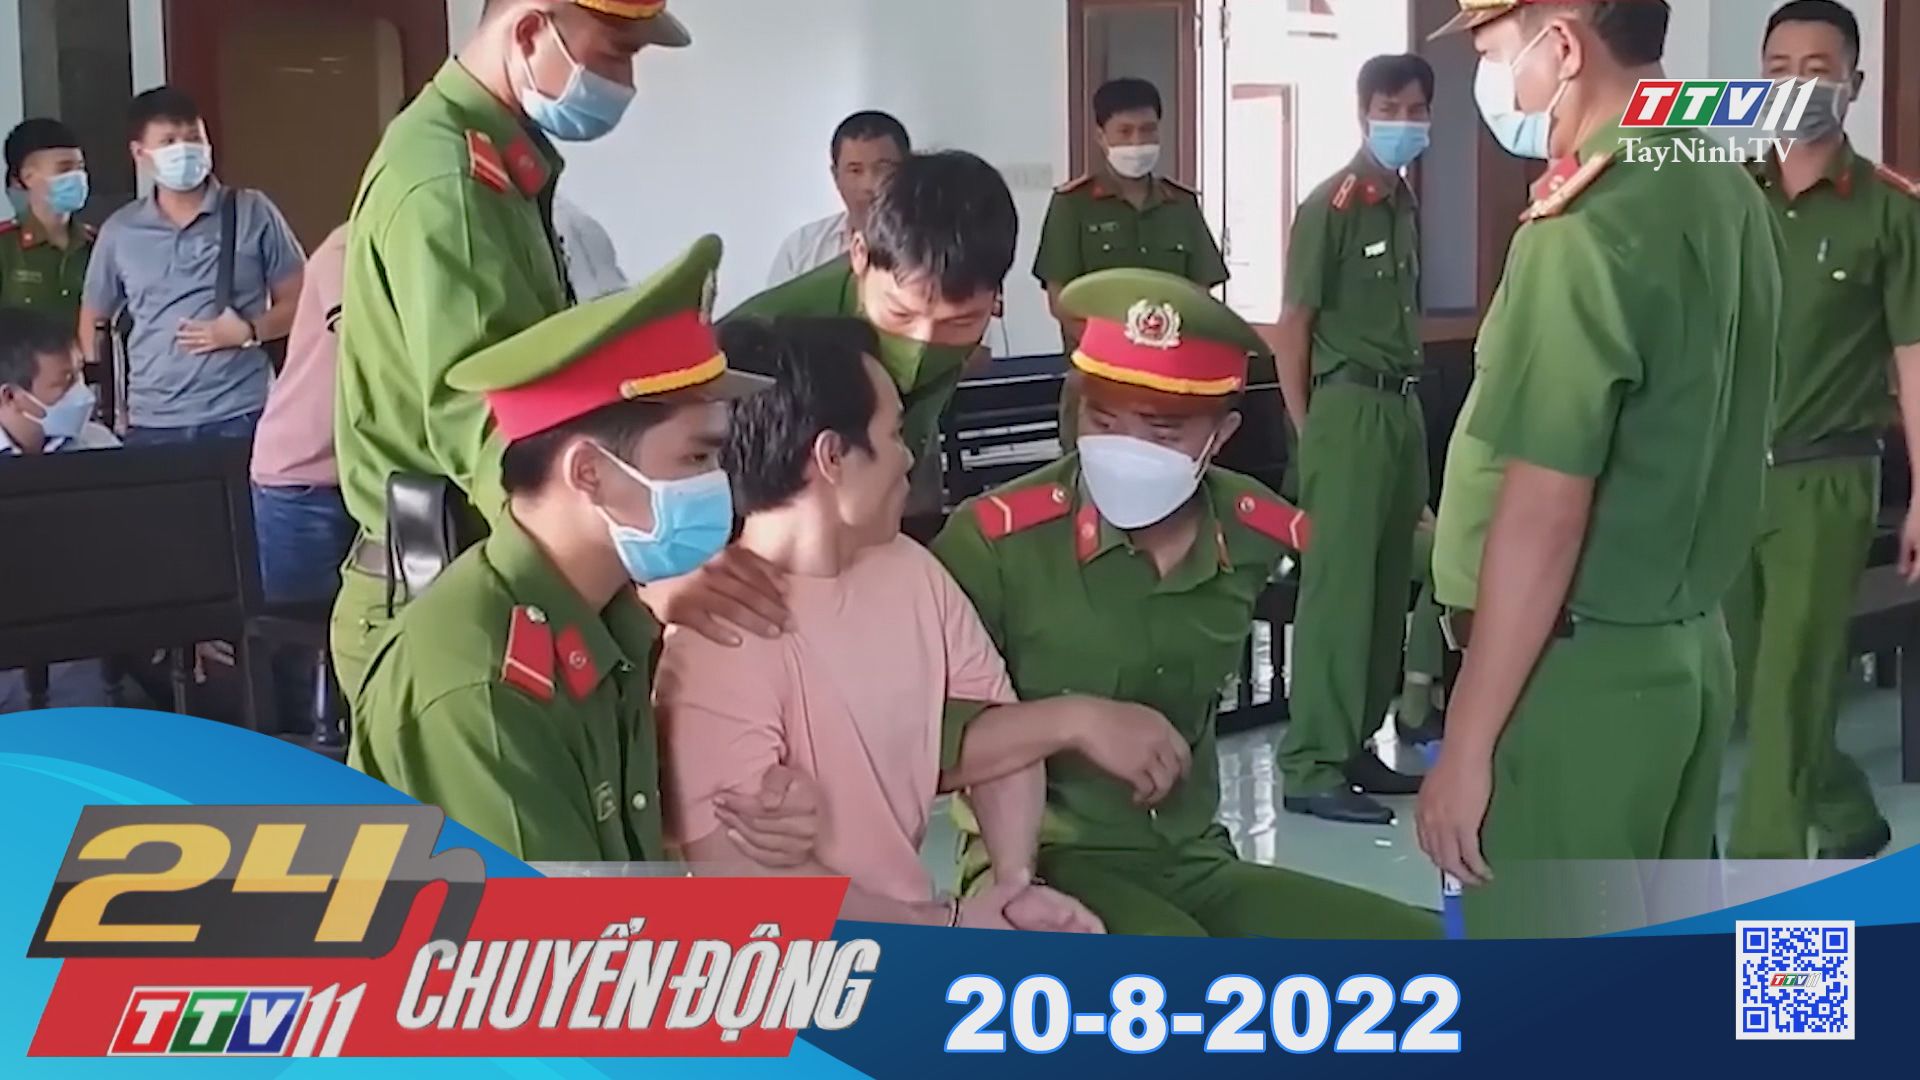 24h Chuyển động 20-8-2022 | Tin tức hôm nay | TayNinhTV